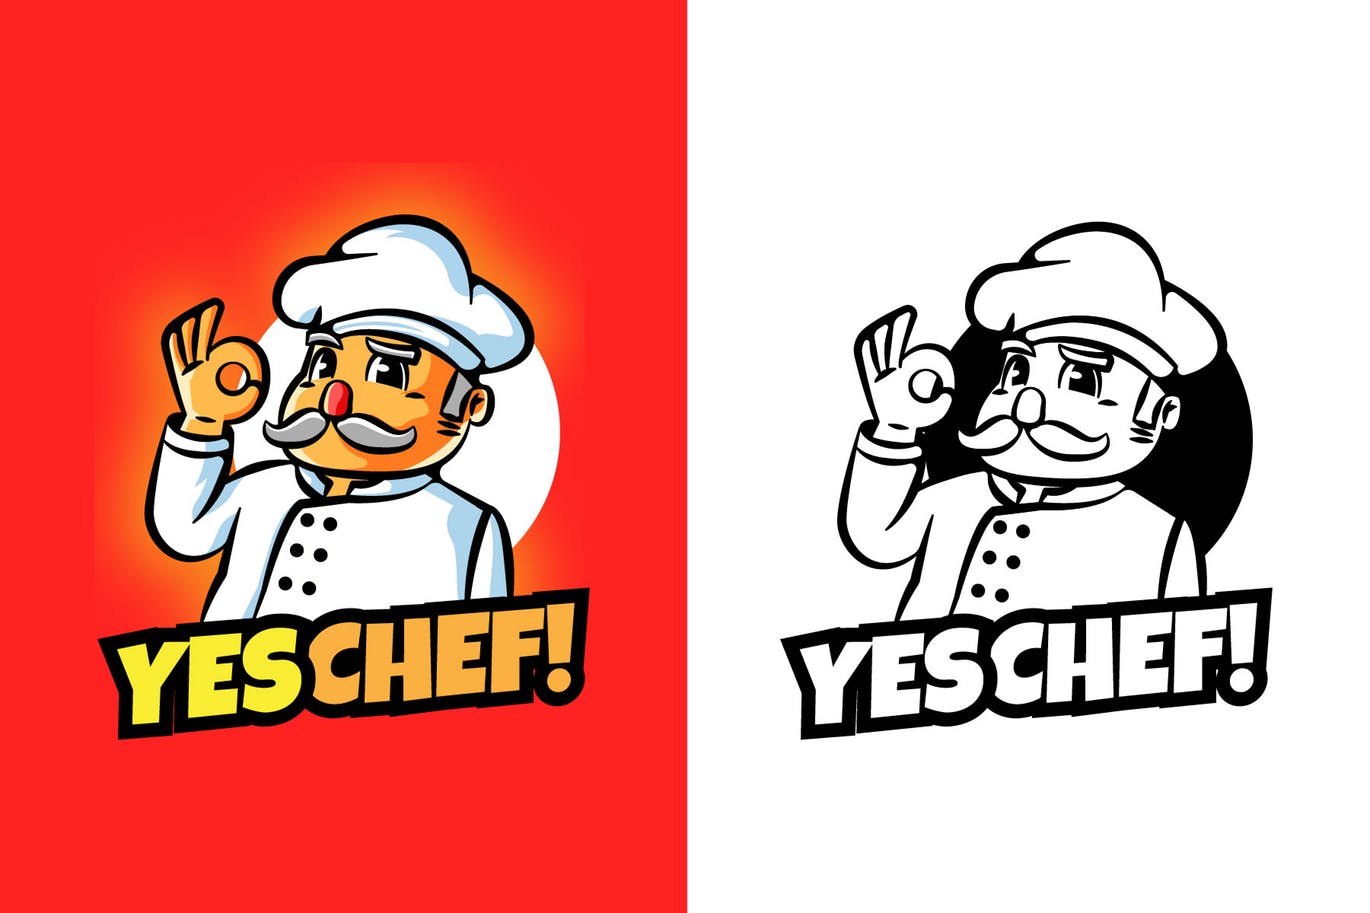 大厨卡通形象餐厅美食品牌Logo设计16图库精选模板 YES CHEF Mascot Logo插图